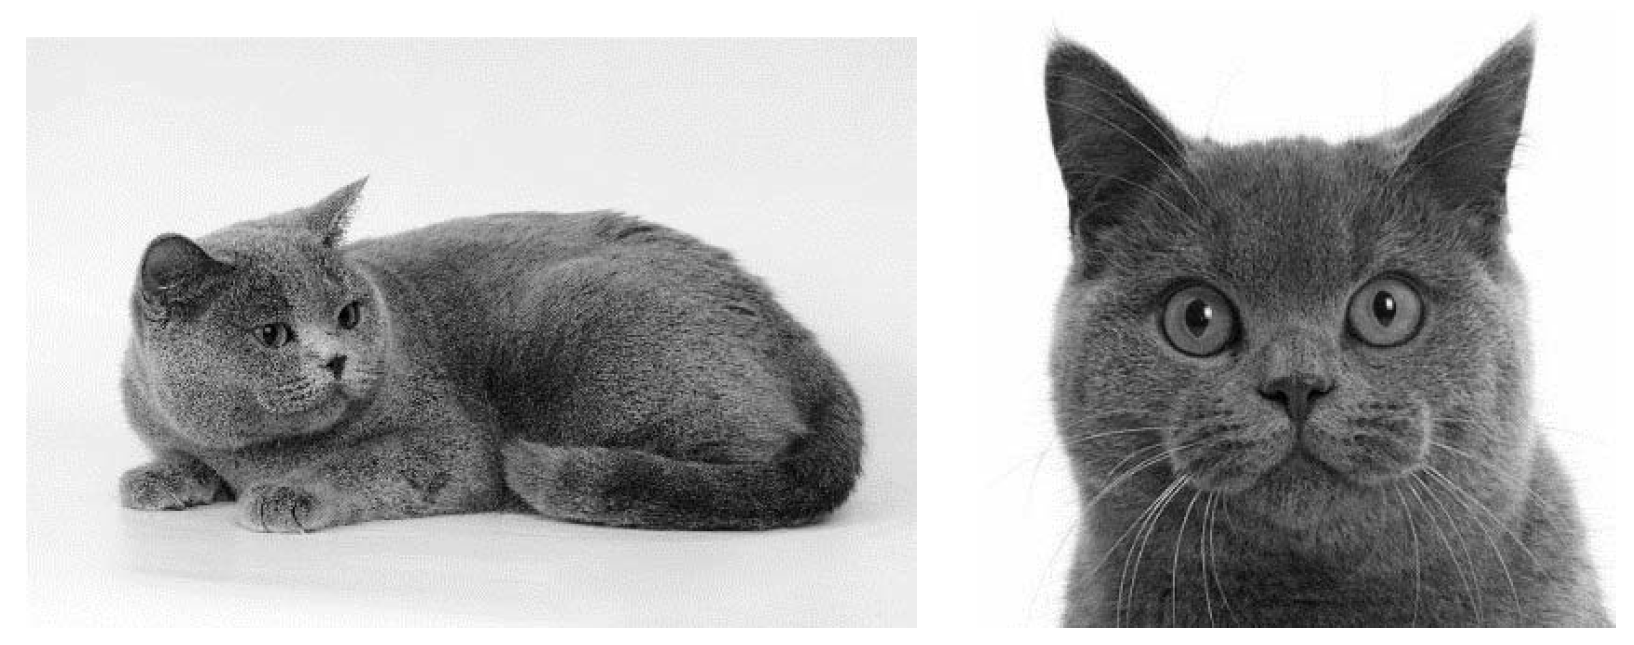 Характеристика породы кошек по строению головы. Рассмотрите фотографию кошки породы